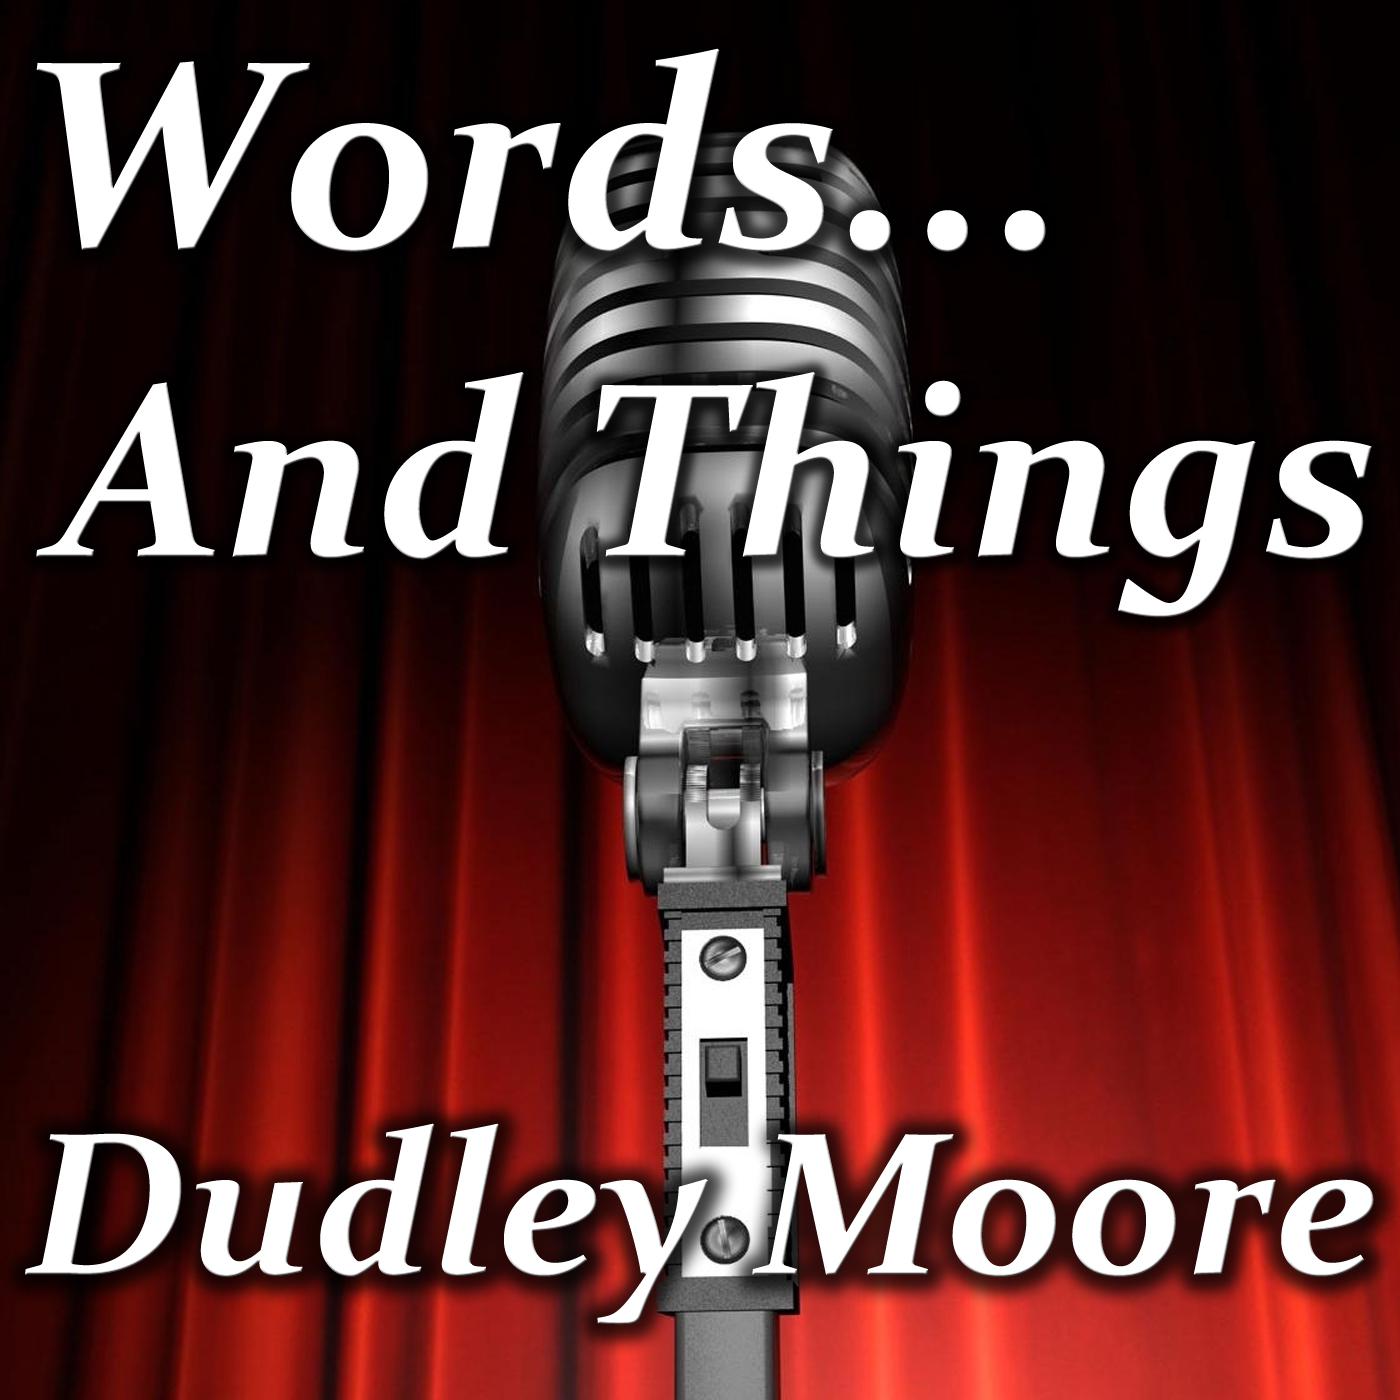 Dudley Moore - Man Bites God